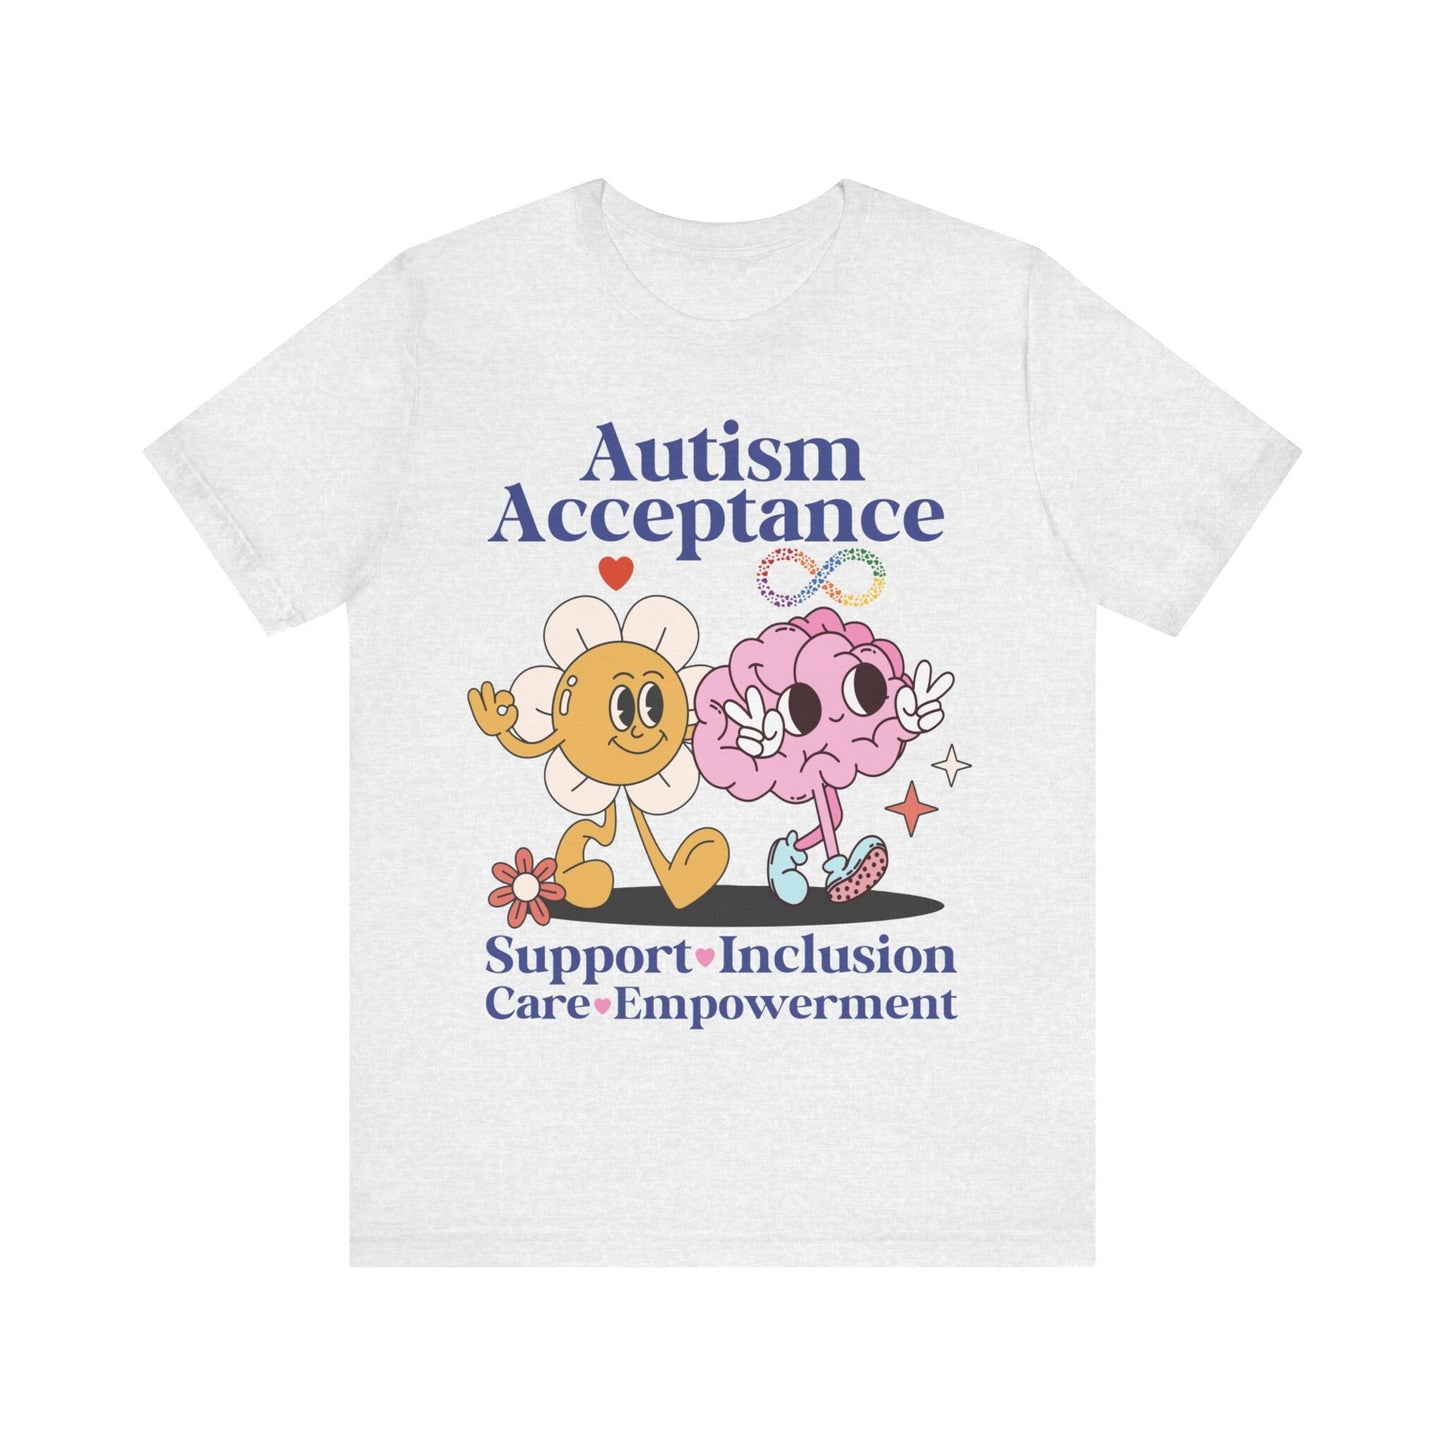 Autism Acceptance shirt